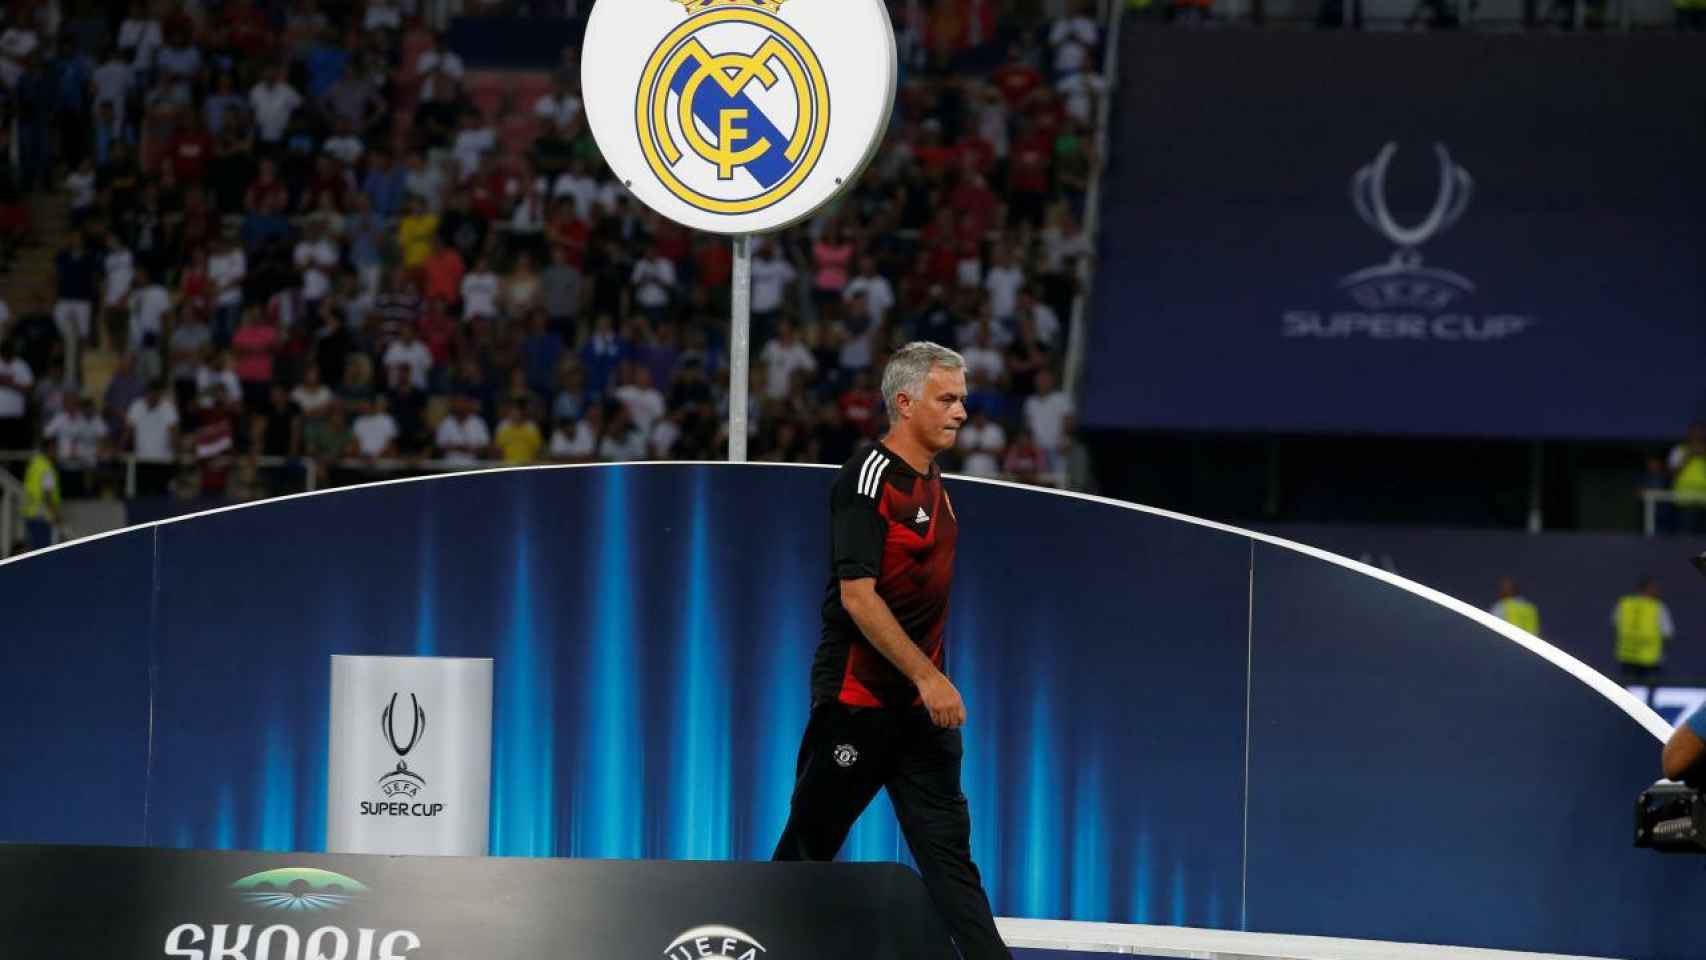 Mourinho durante la Supercopa de Europa de 2017 contra el Real Madrid